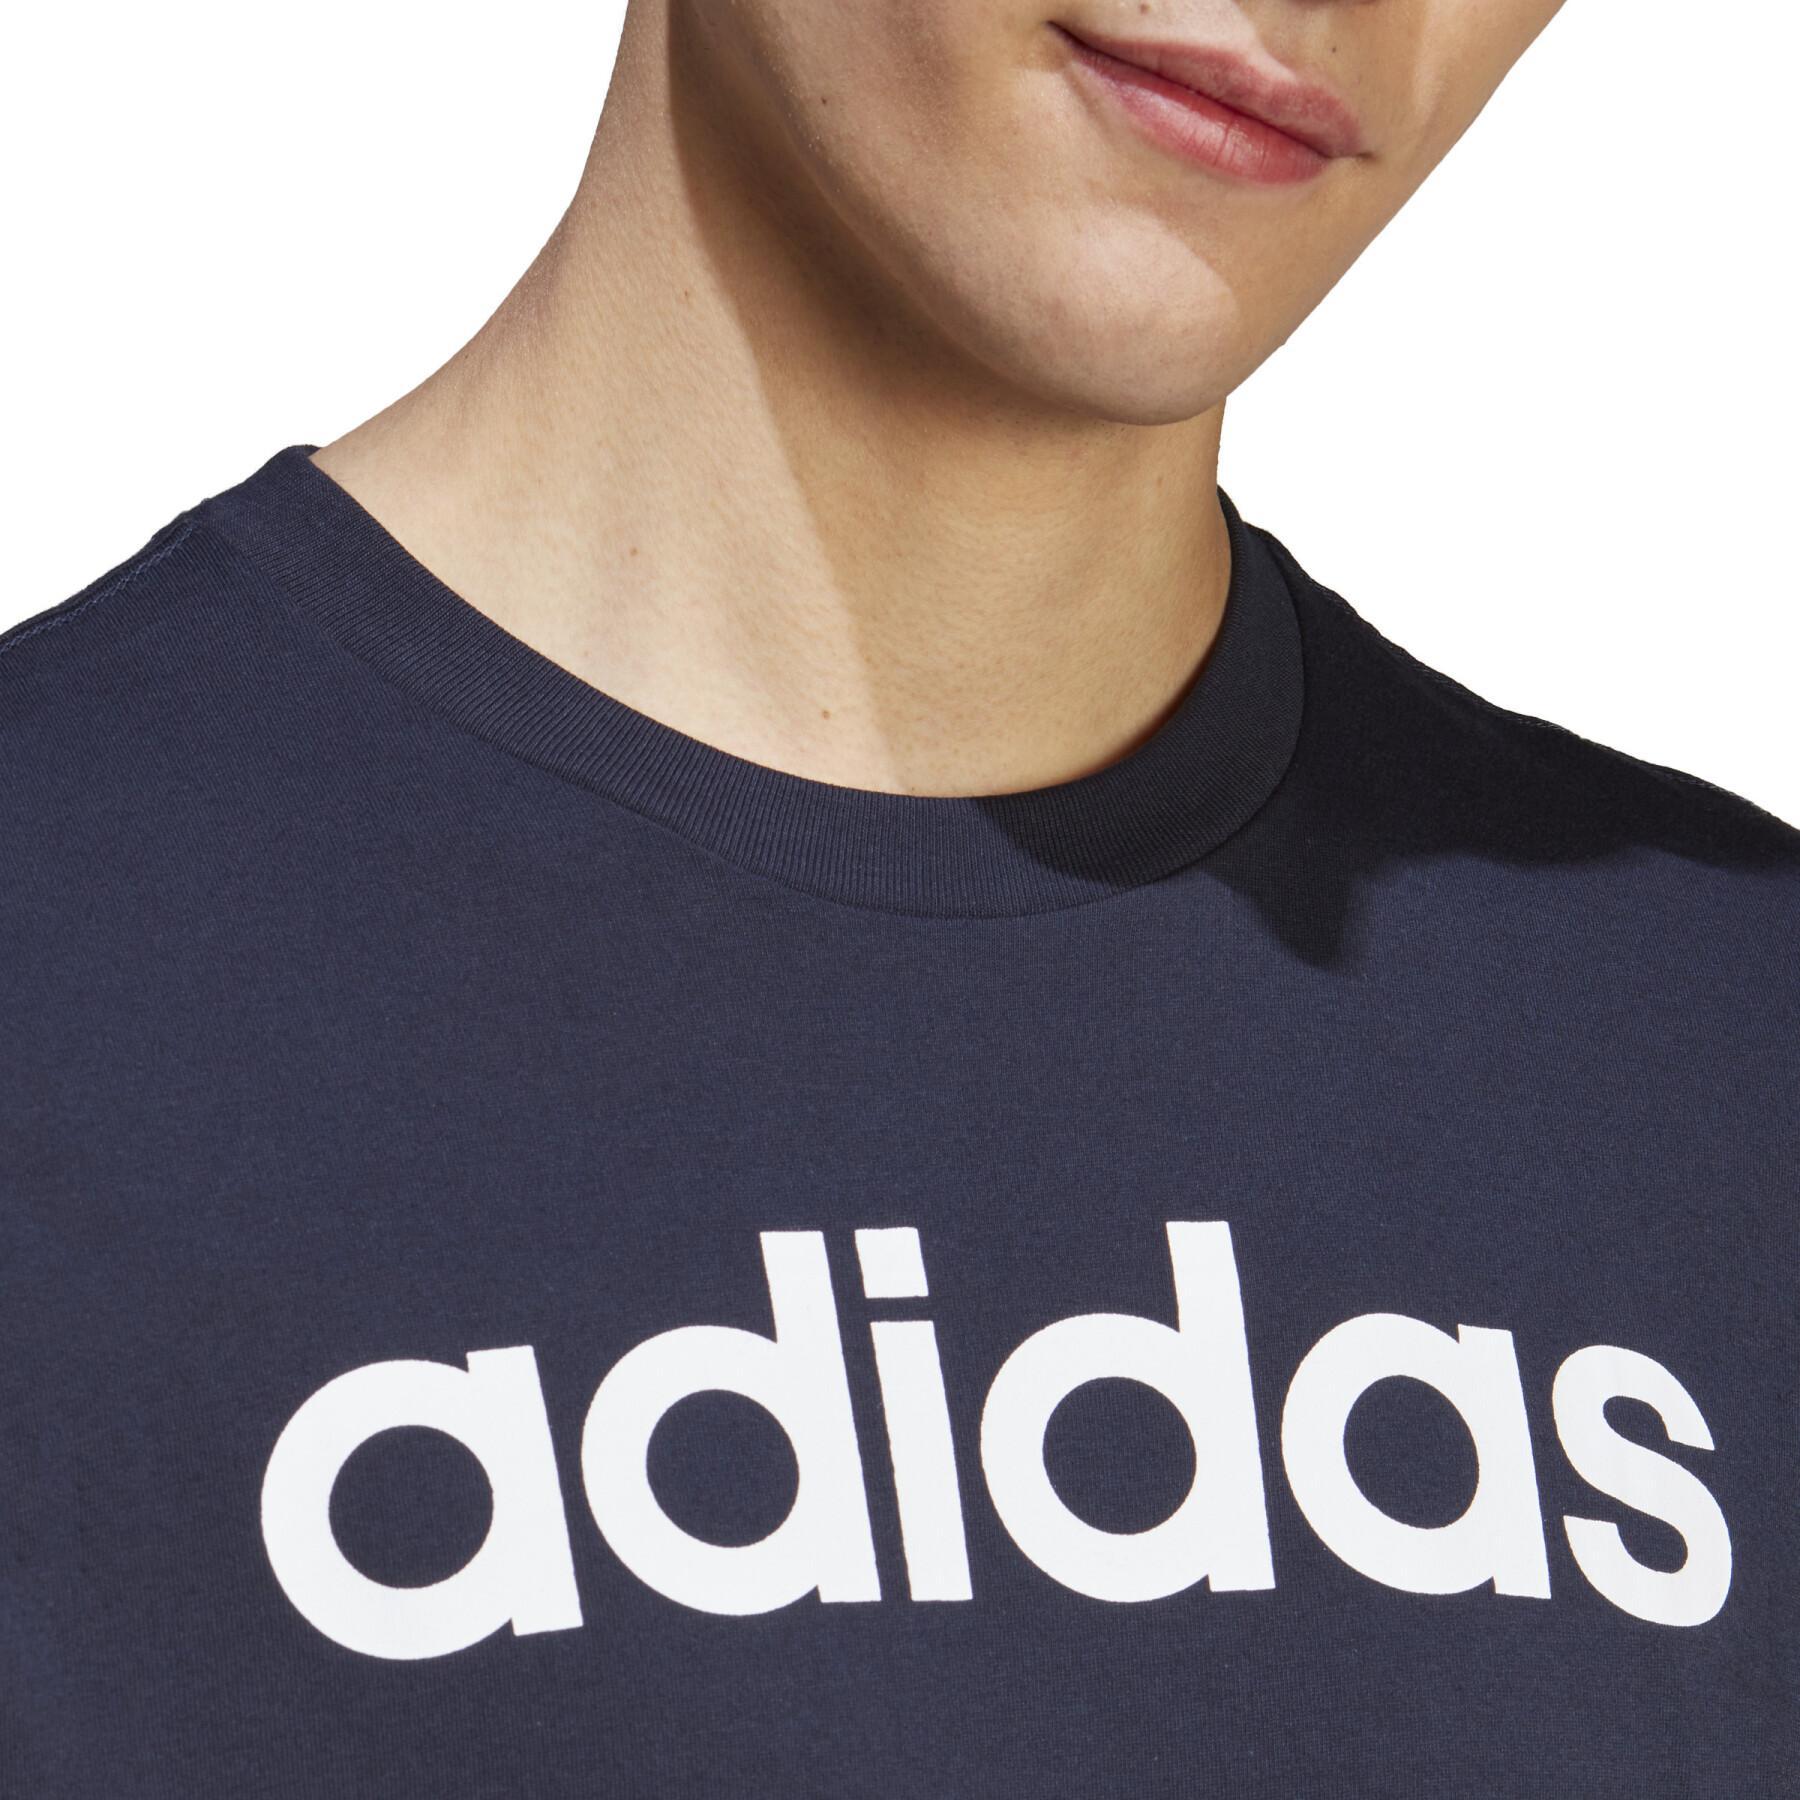 T-shirt logo brodé adidas Essentials